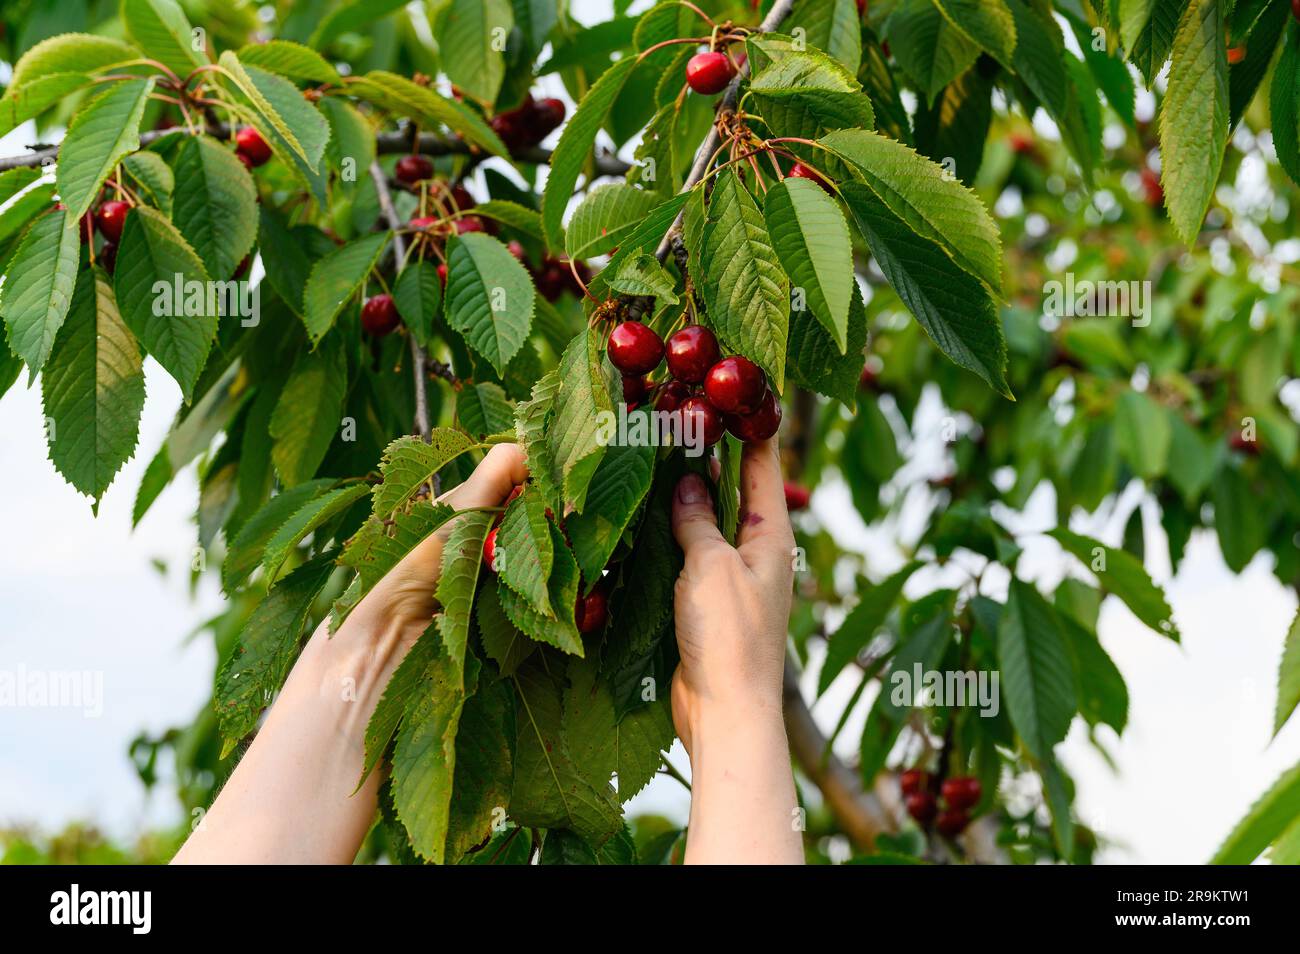 Raccolta di frutti di ciliegia maturi. La mano femminile sta raccogliendo la ciliegia matura sui suoi rami. Foto Stock